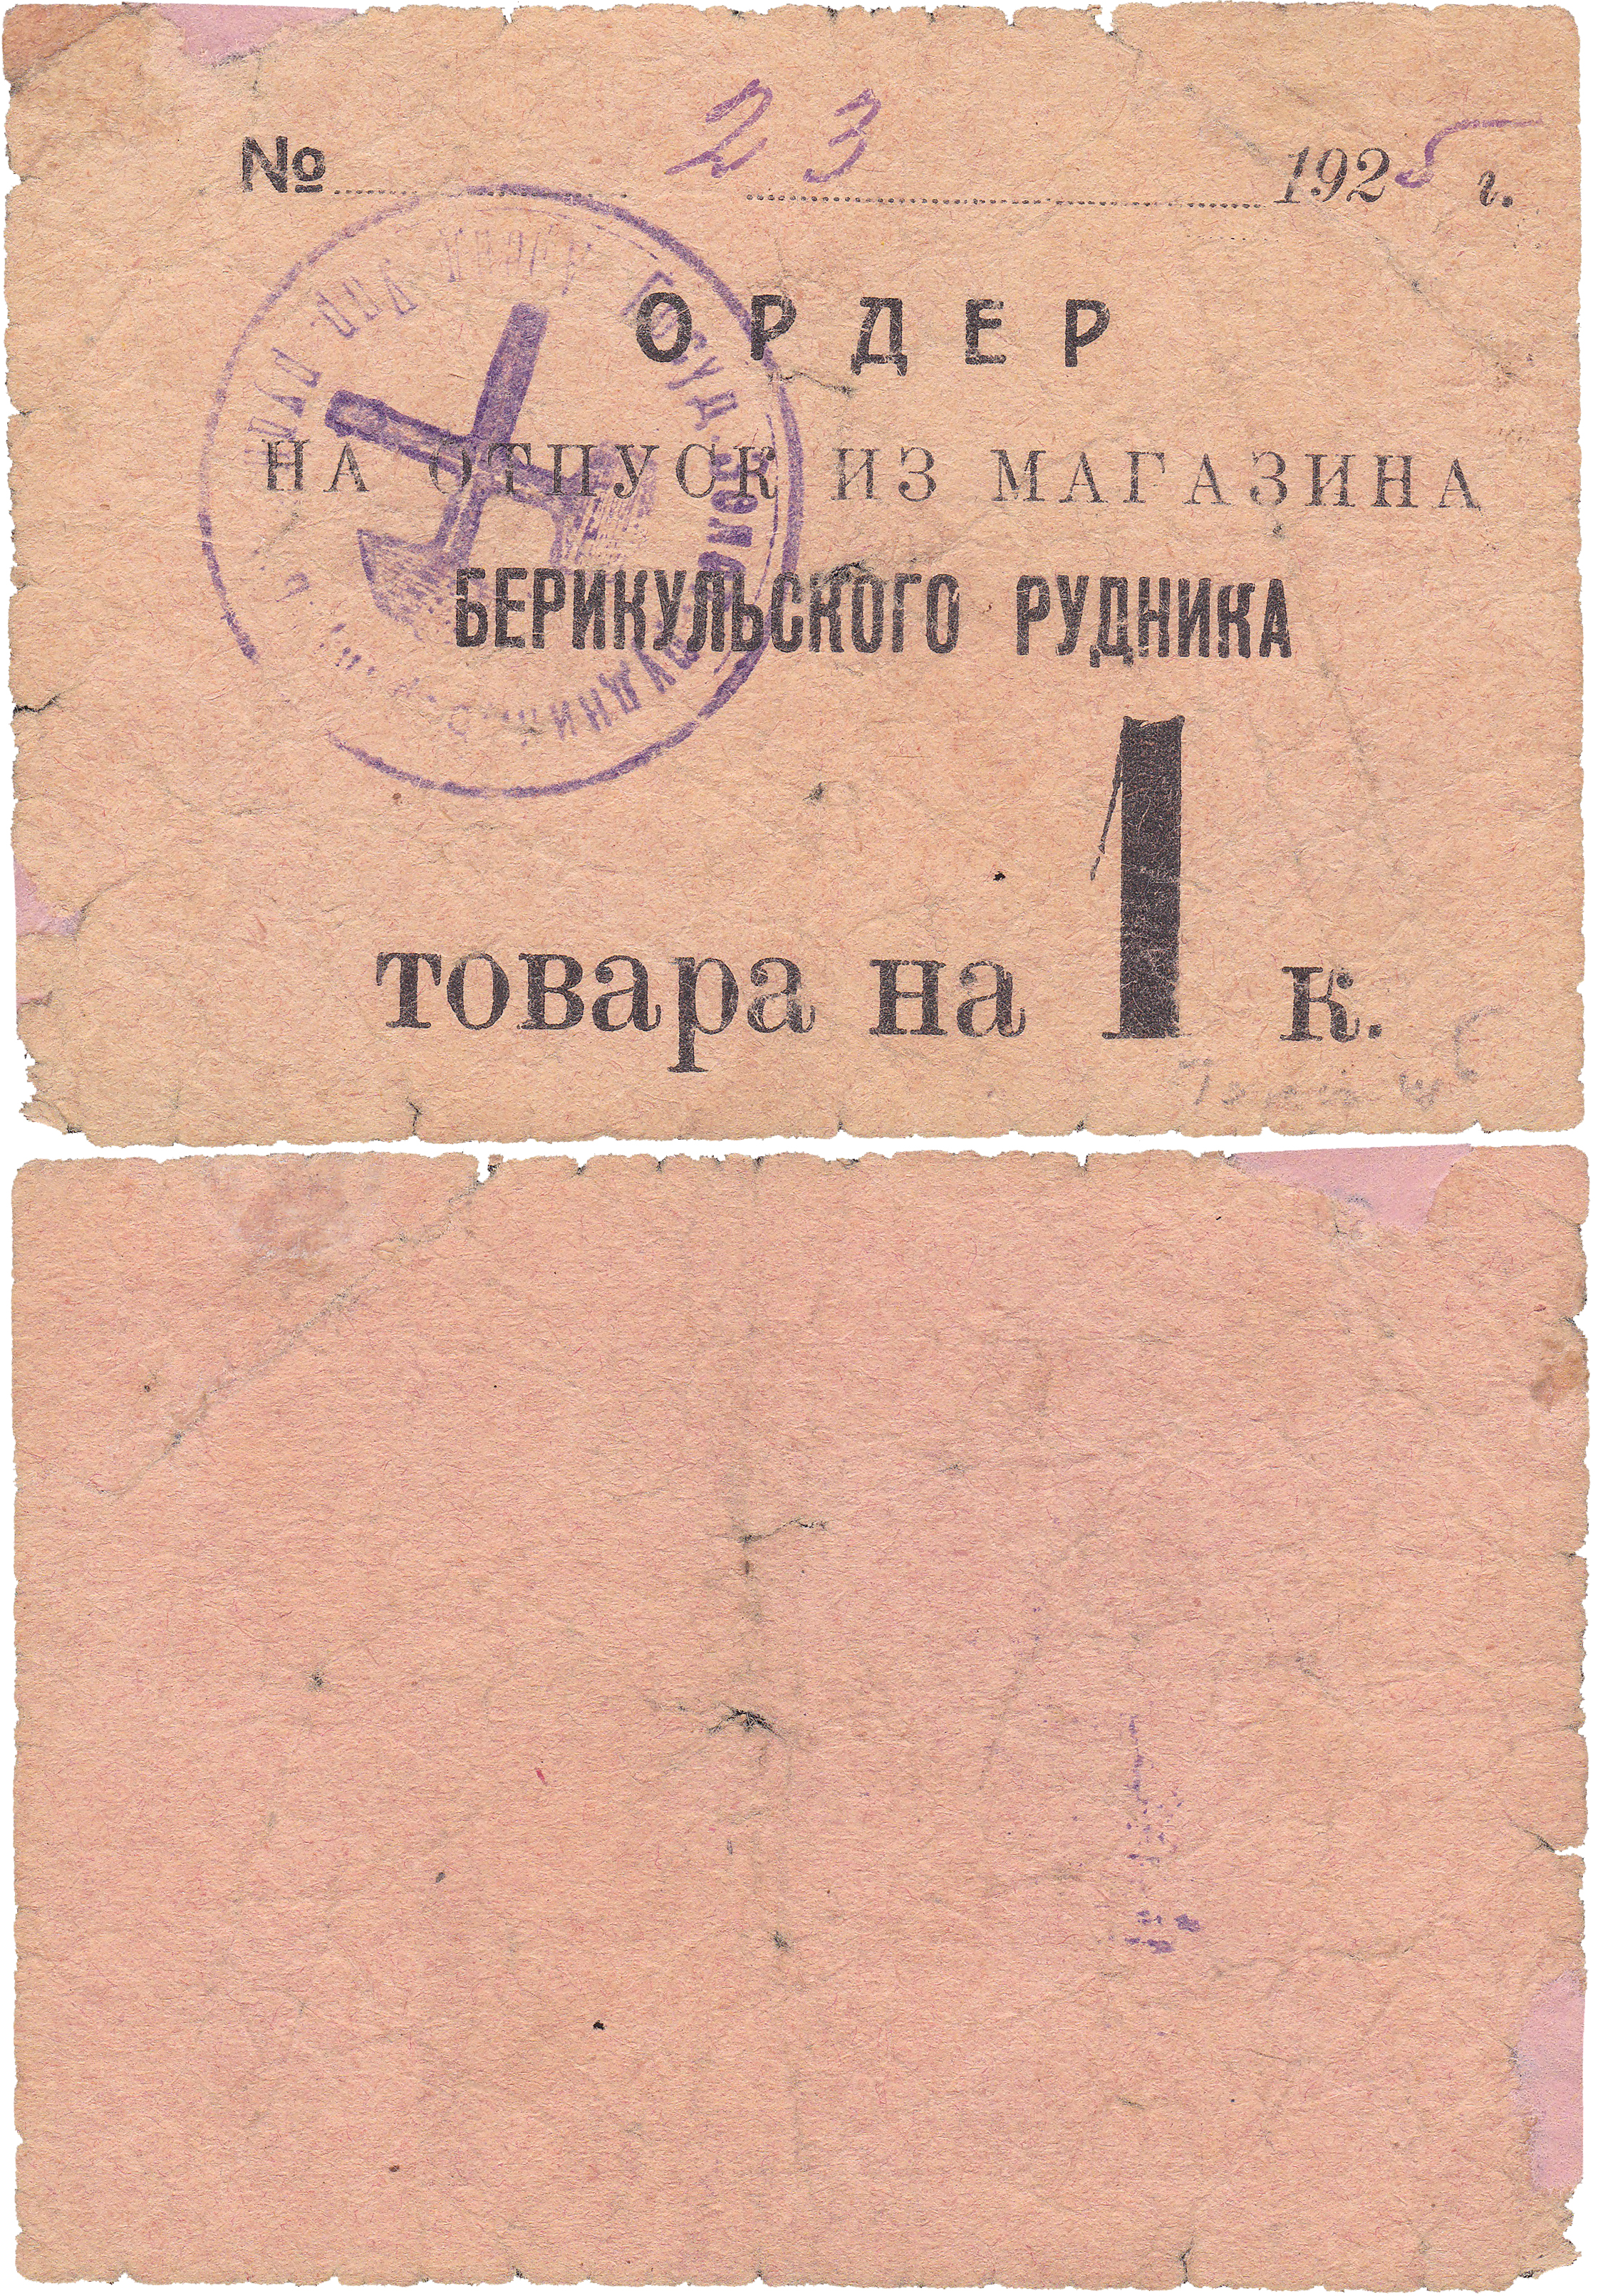 Ордер на отпуск товара на 1 Копейка 1925 год. Магазин Берикульского рудника